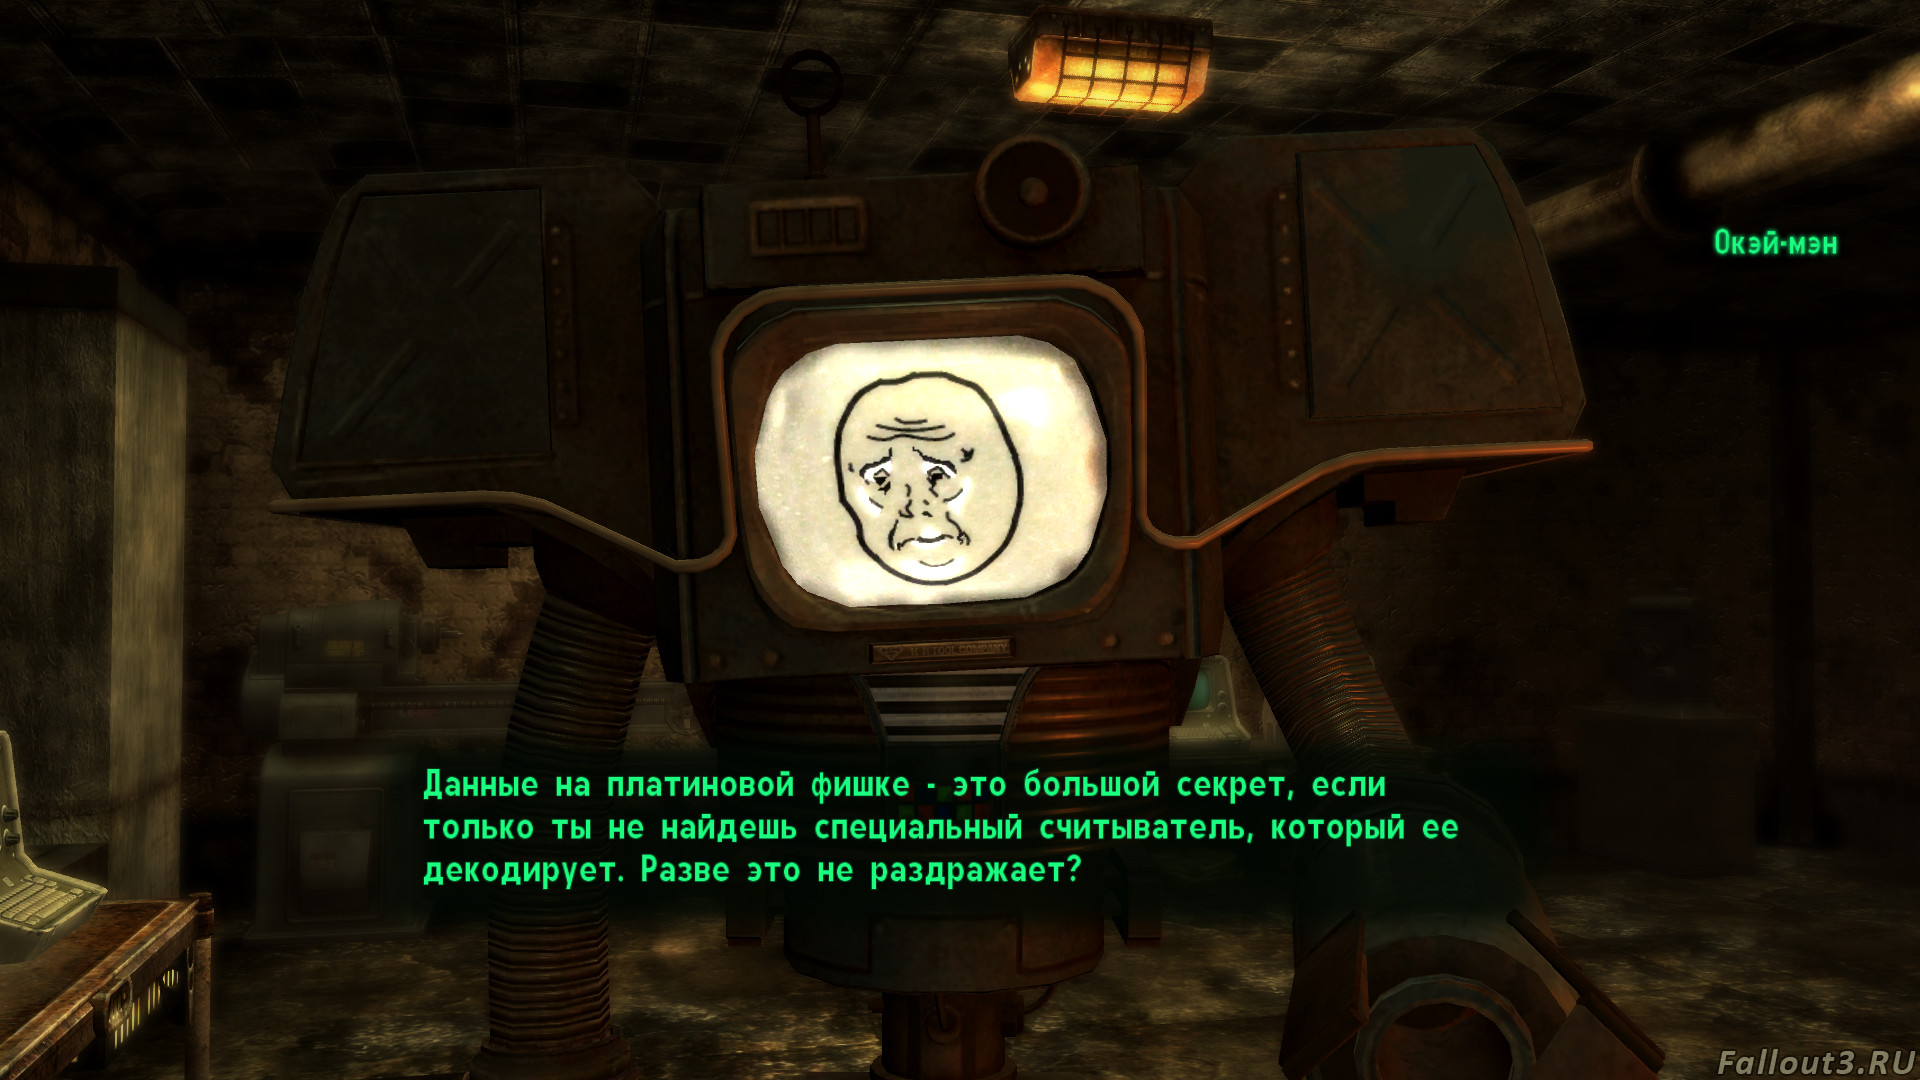 Fallout 4 диалоги как в fallout 3 фото 60